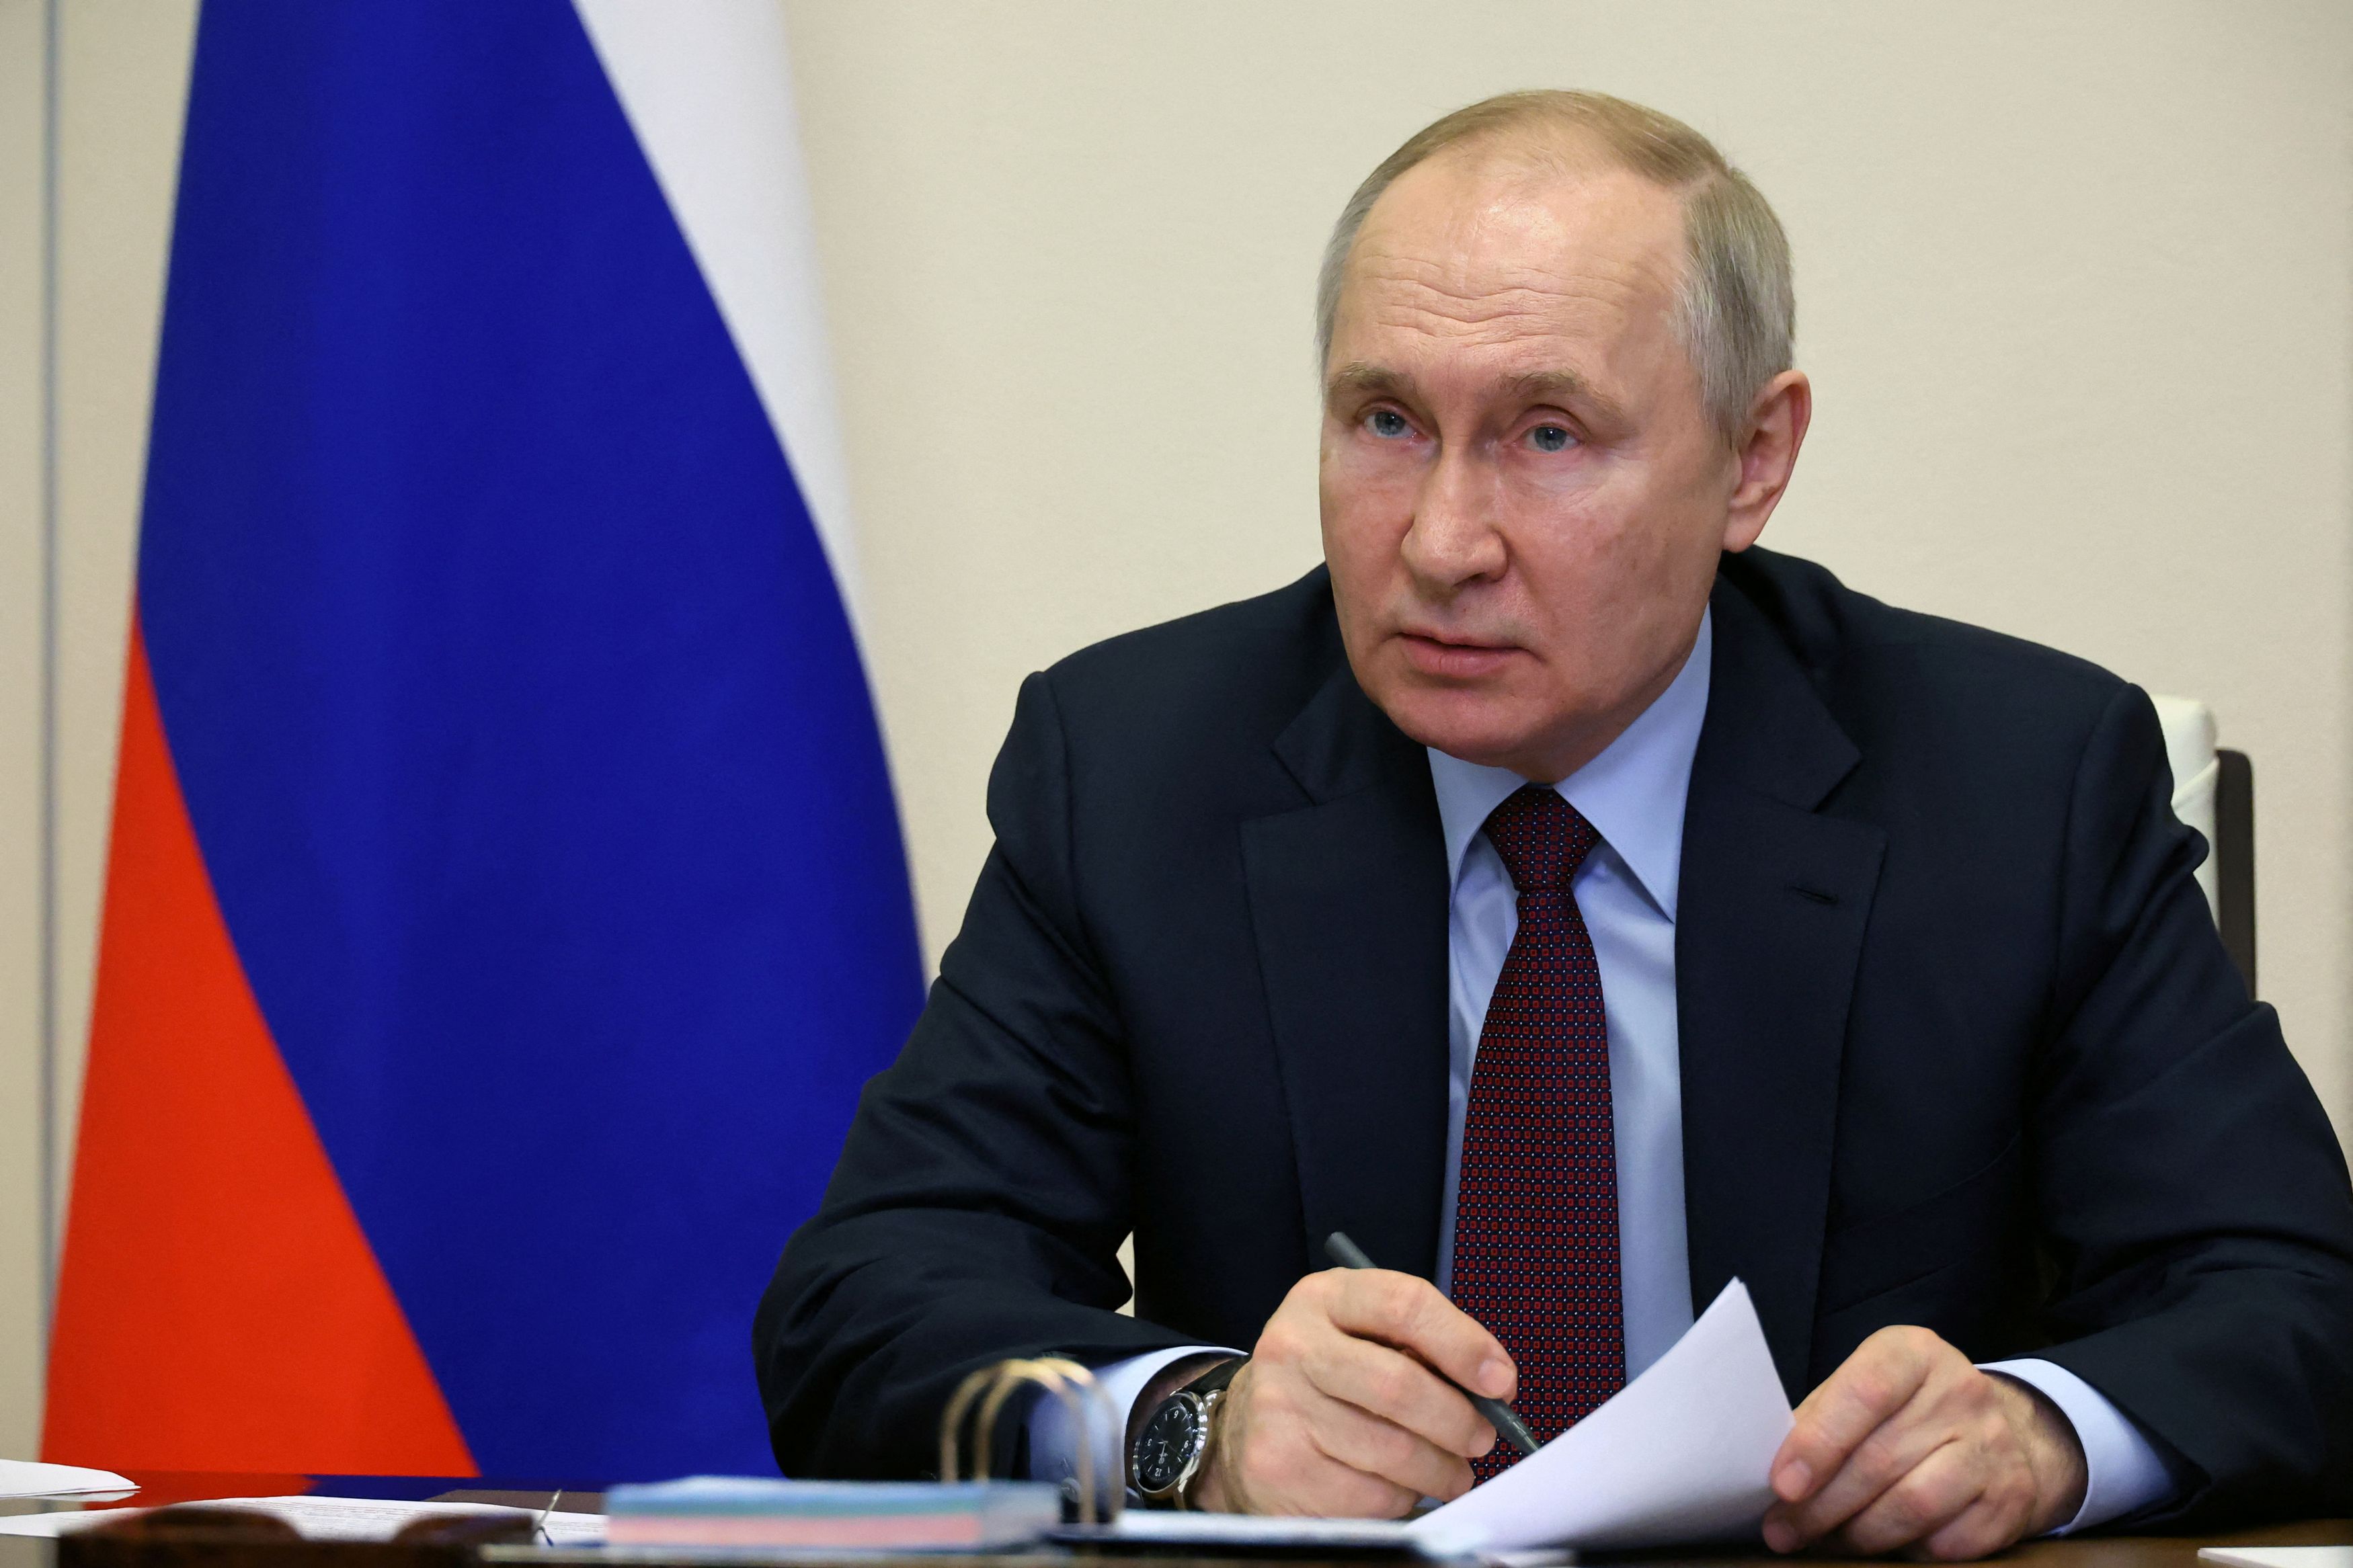 Ρωσία: «Δύσκολη» η κατάσταση στις προσαρτημένες περιοχές, παραδέχεται ξανά ο Πούτιν